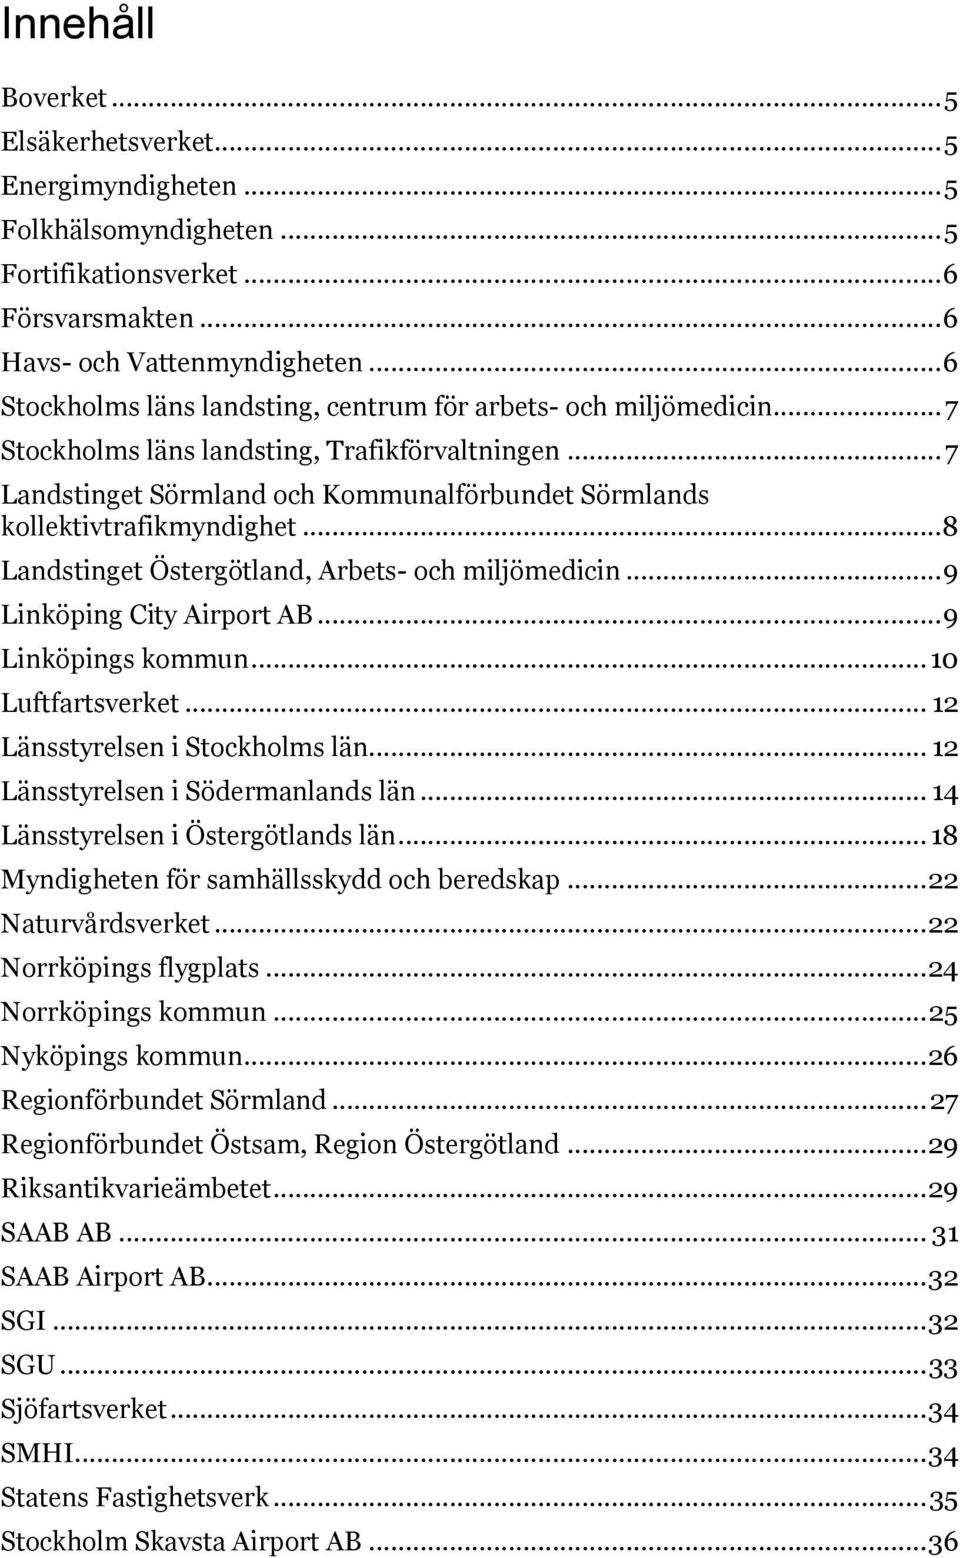 .. 7 Landstinget Sörmland och Kommunalförbundet Sörmlands kollektivtrafikmyndighet... 8 Landstinget Östergötland, Arbets- och miljömedicin... 9 Linköping City Airport AB... 9 Linköpings kommun.